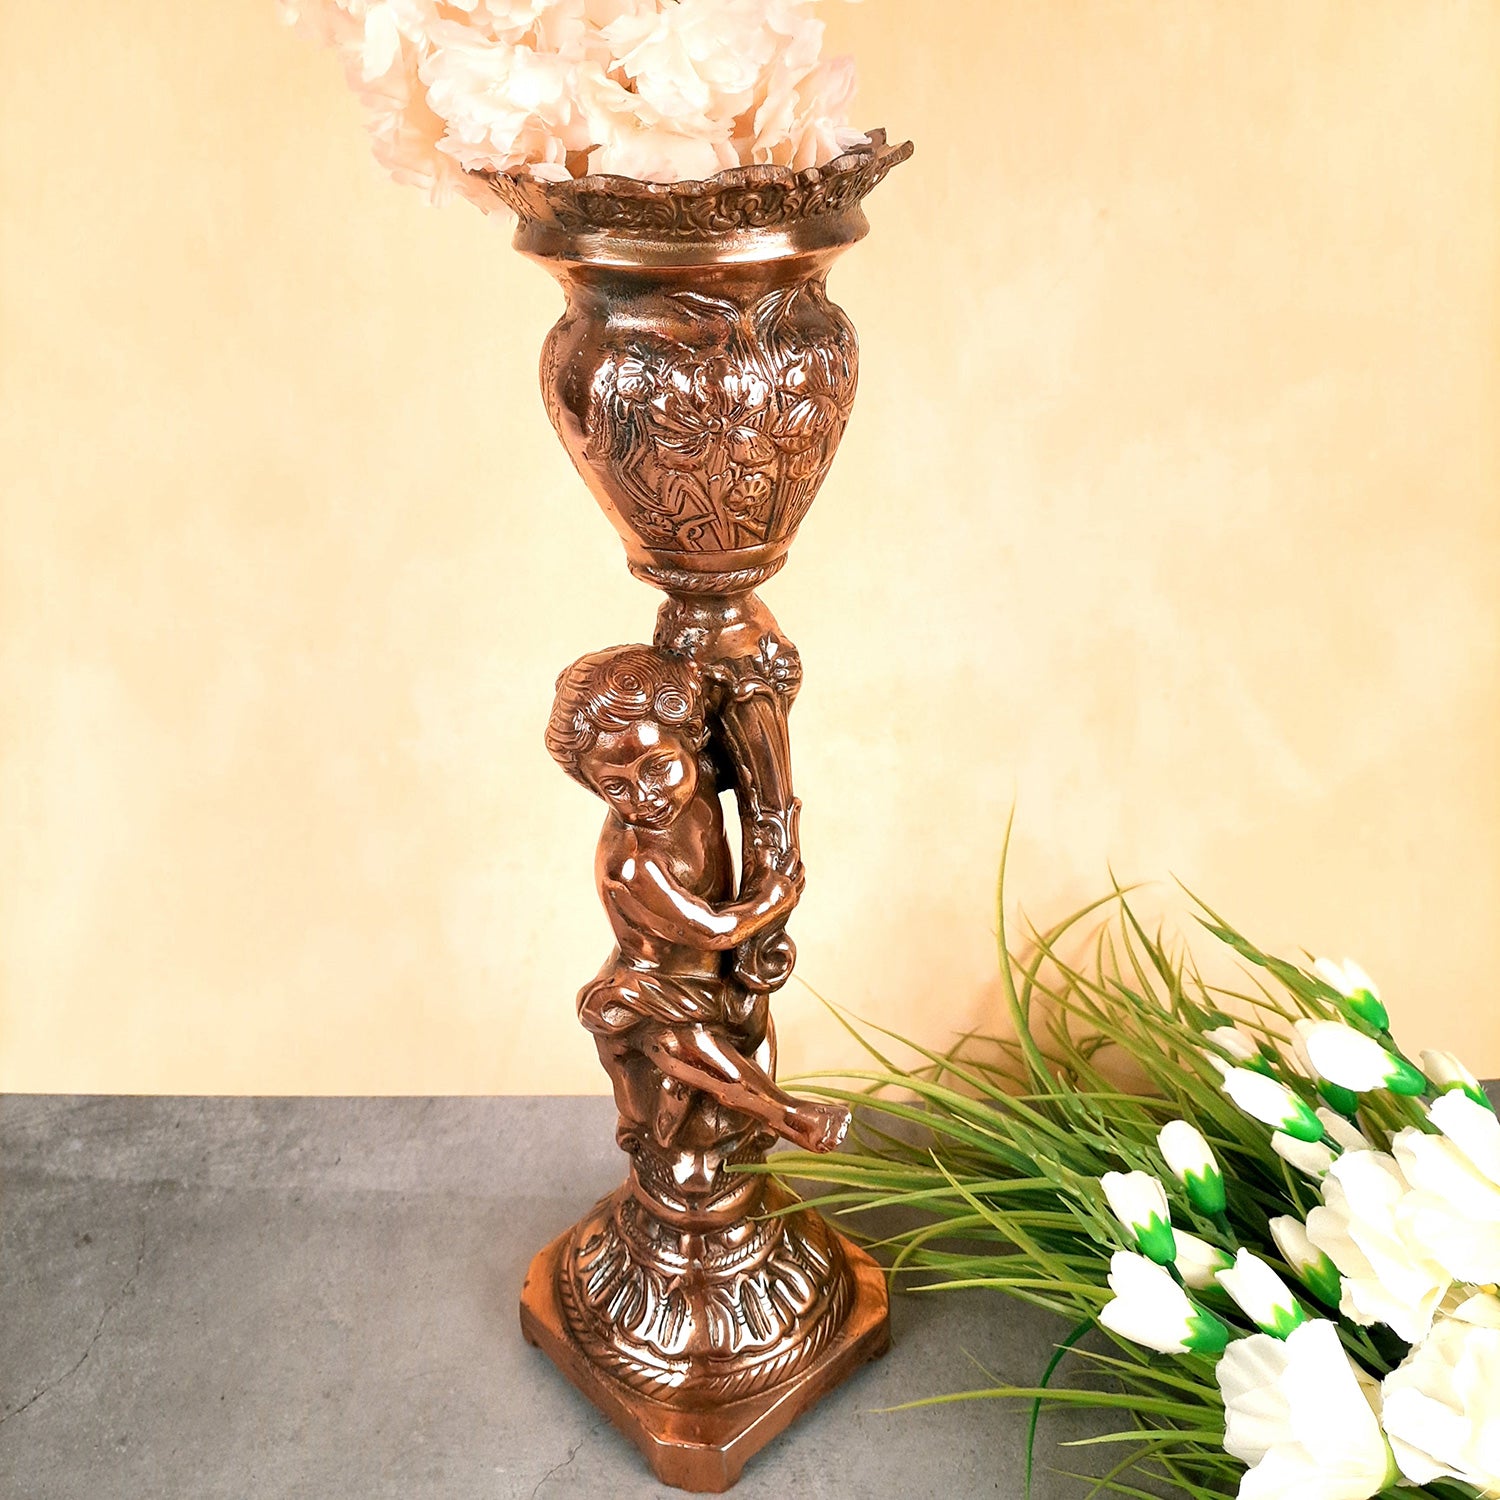 Antique Flowe Pot Big | Decorative Indoor Flower Pot - For Living Room, Home, Corner, Entrance Decor - 20 Inch - Apkamart